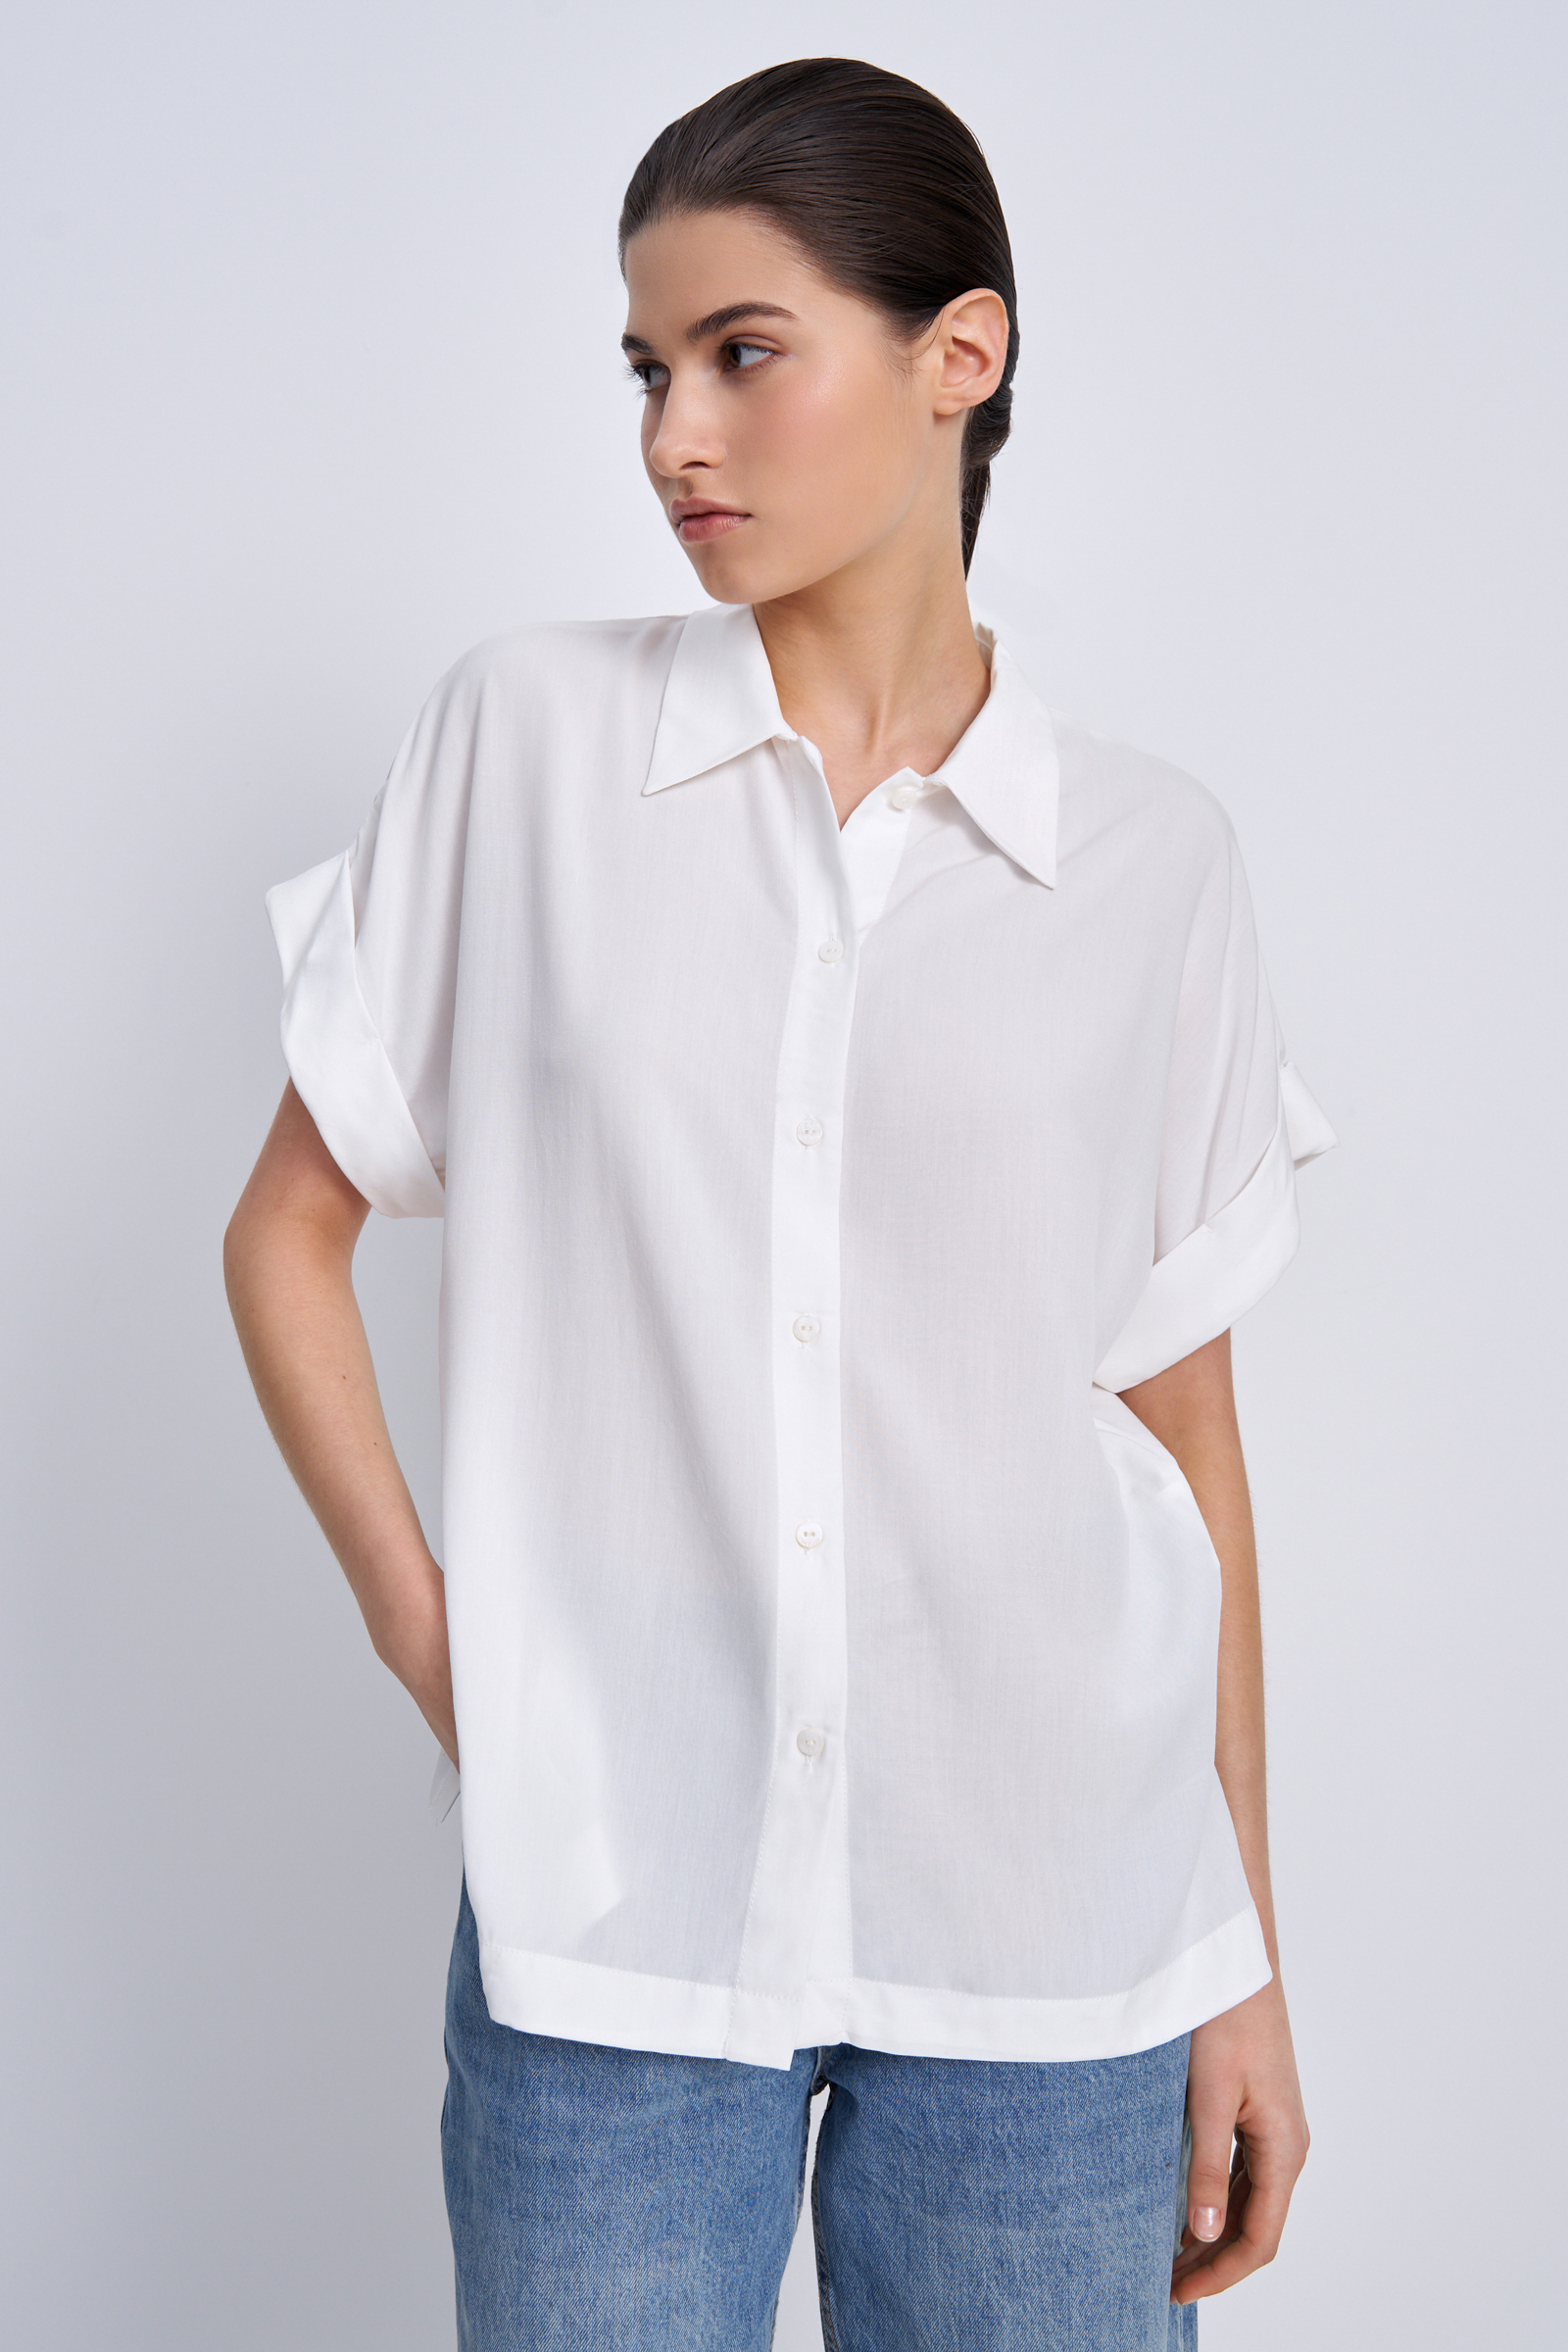 Рубашка женская Finn Flare BAS-10041 белая M